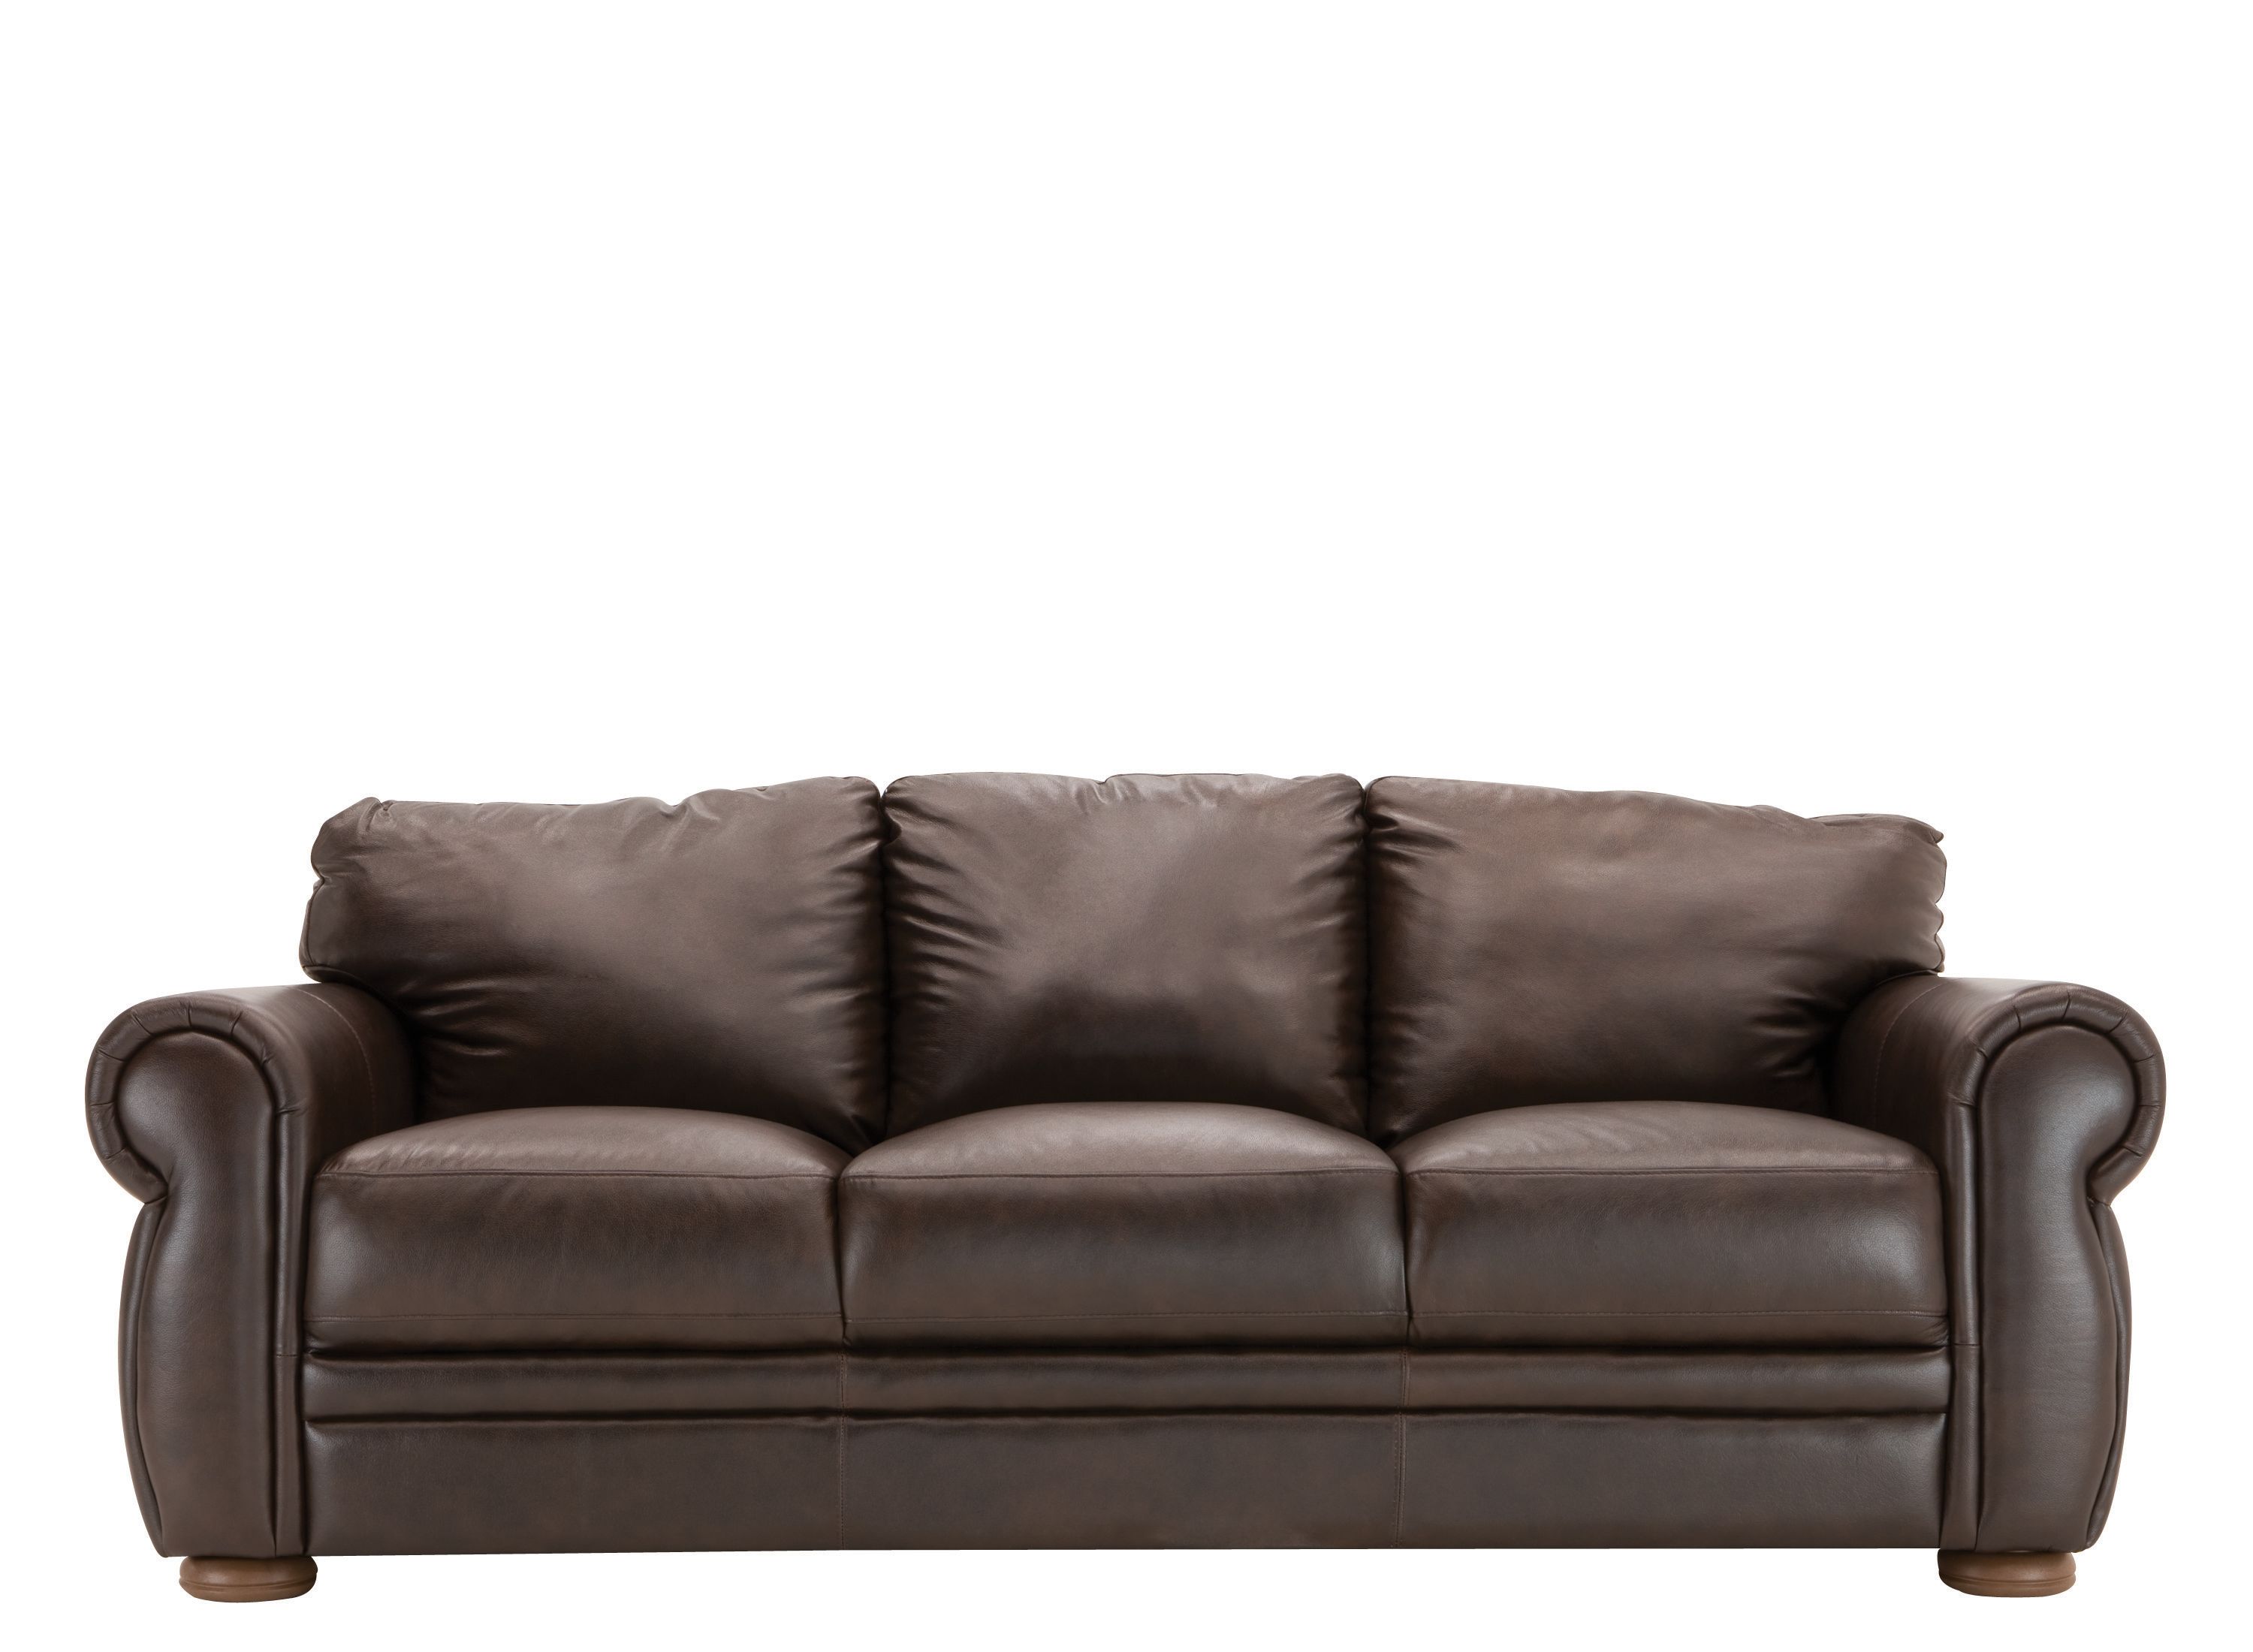 Leather Sofa Bed Ikea